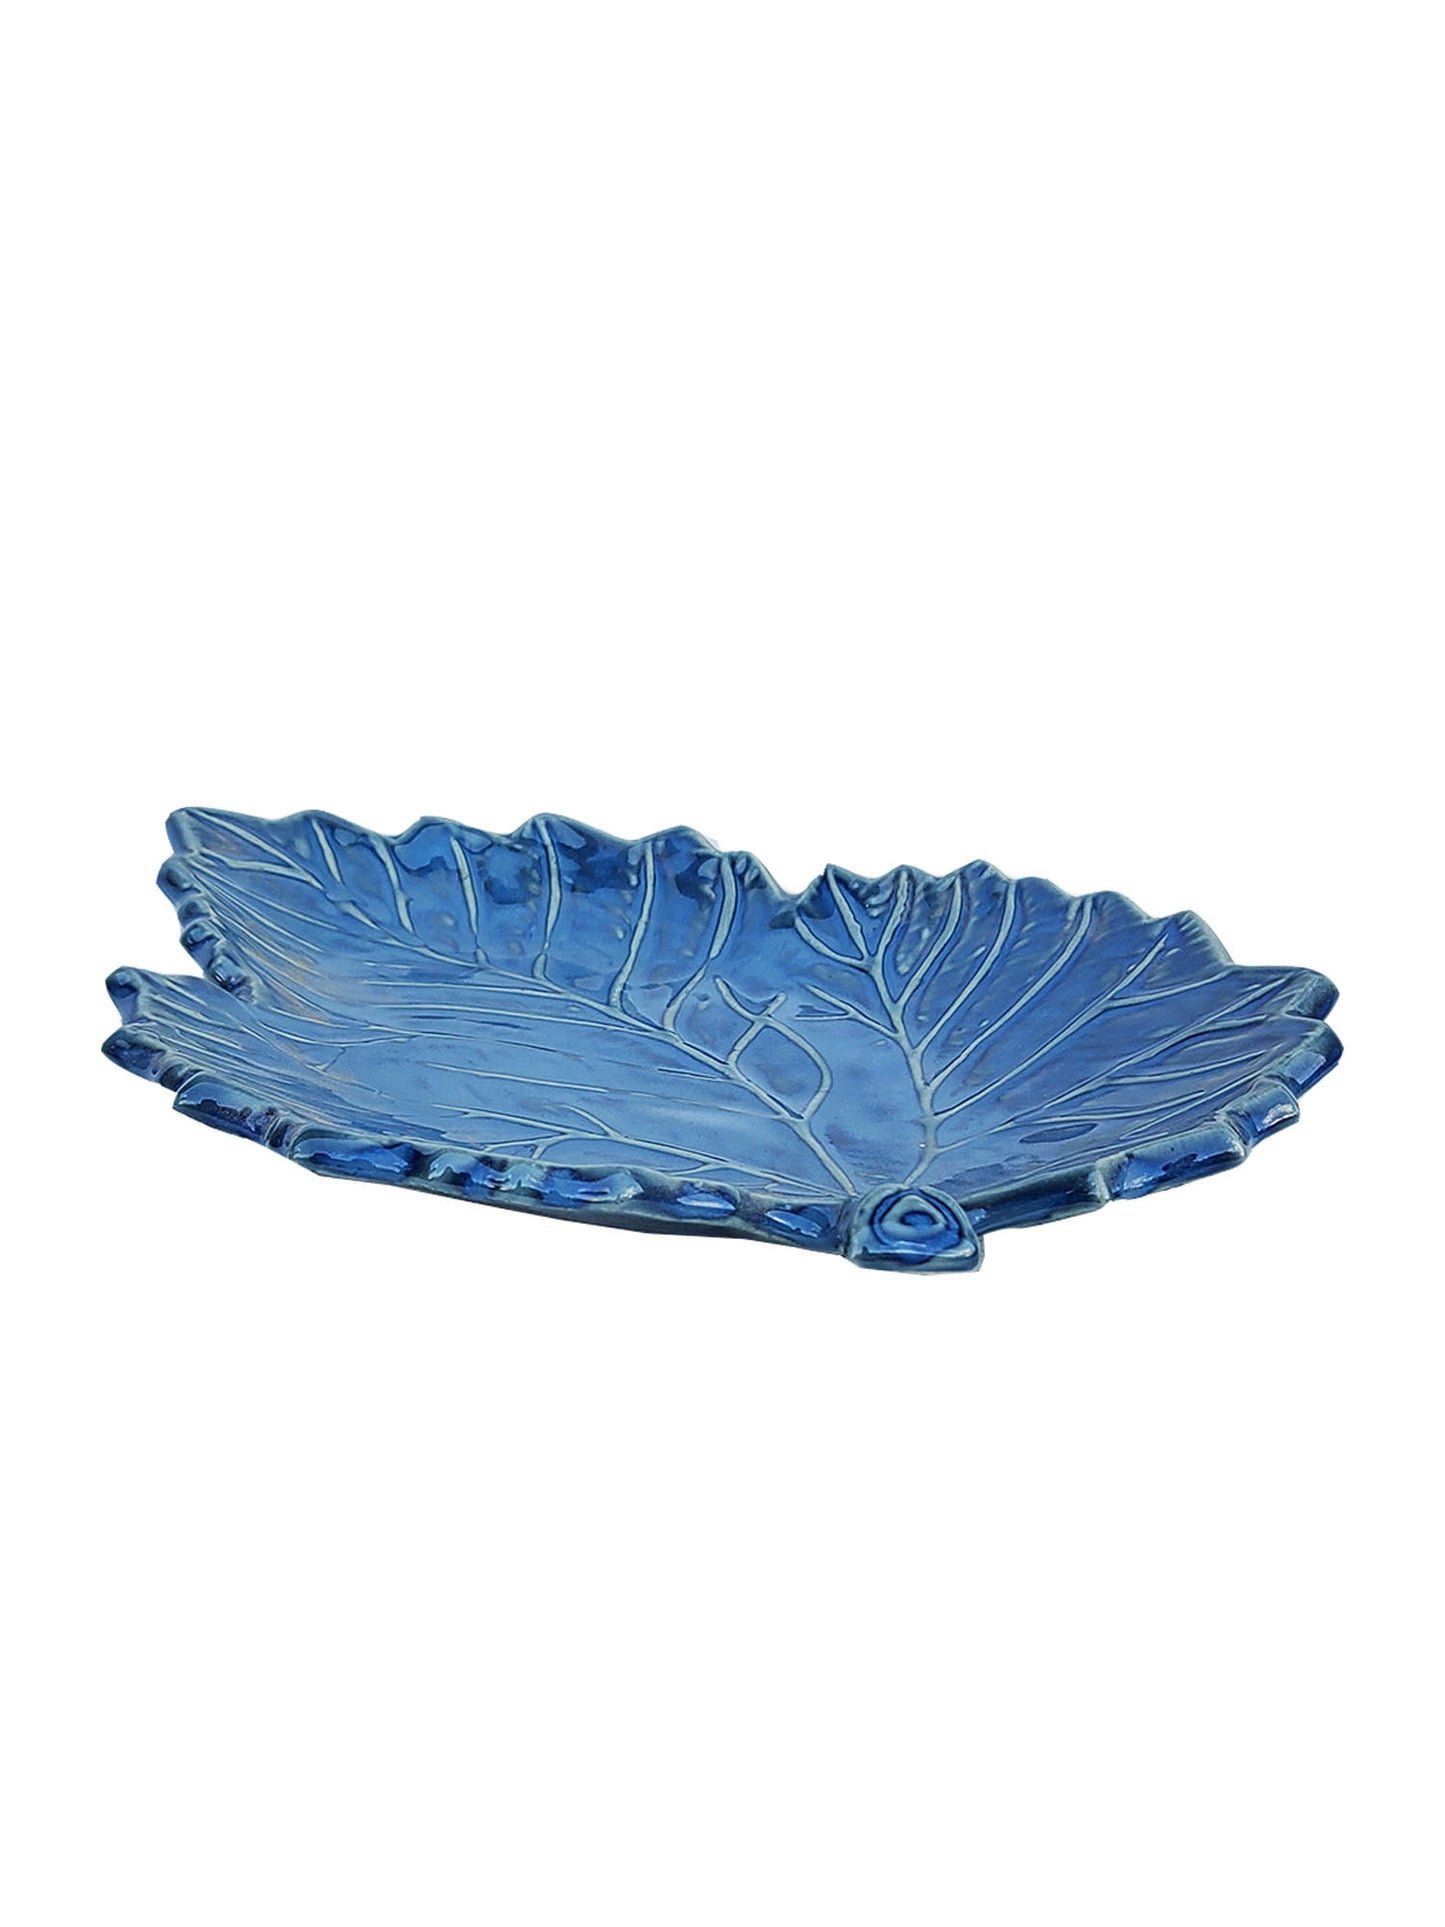 Blue Leaf Platter Tray